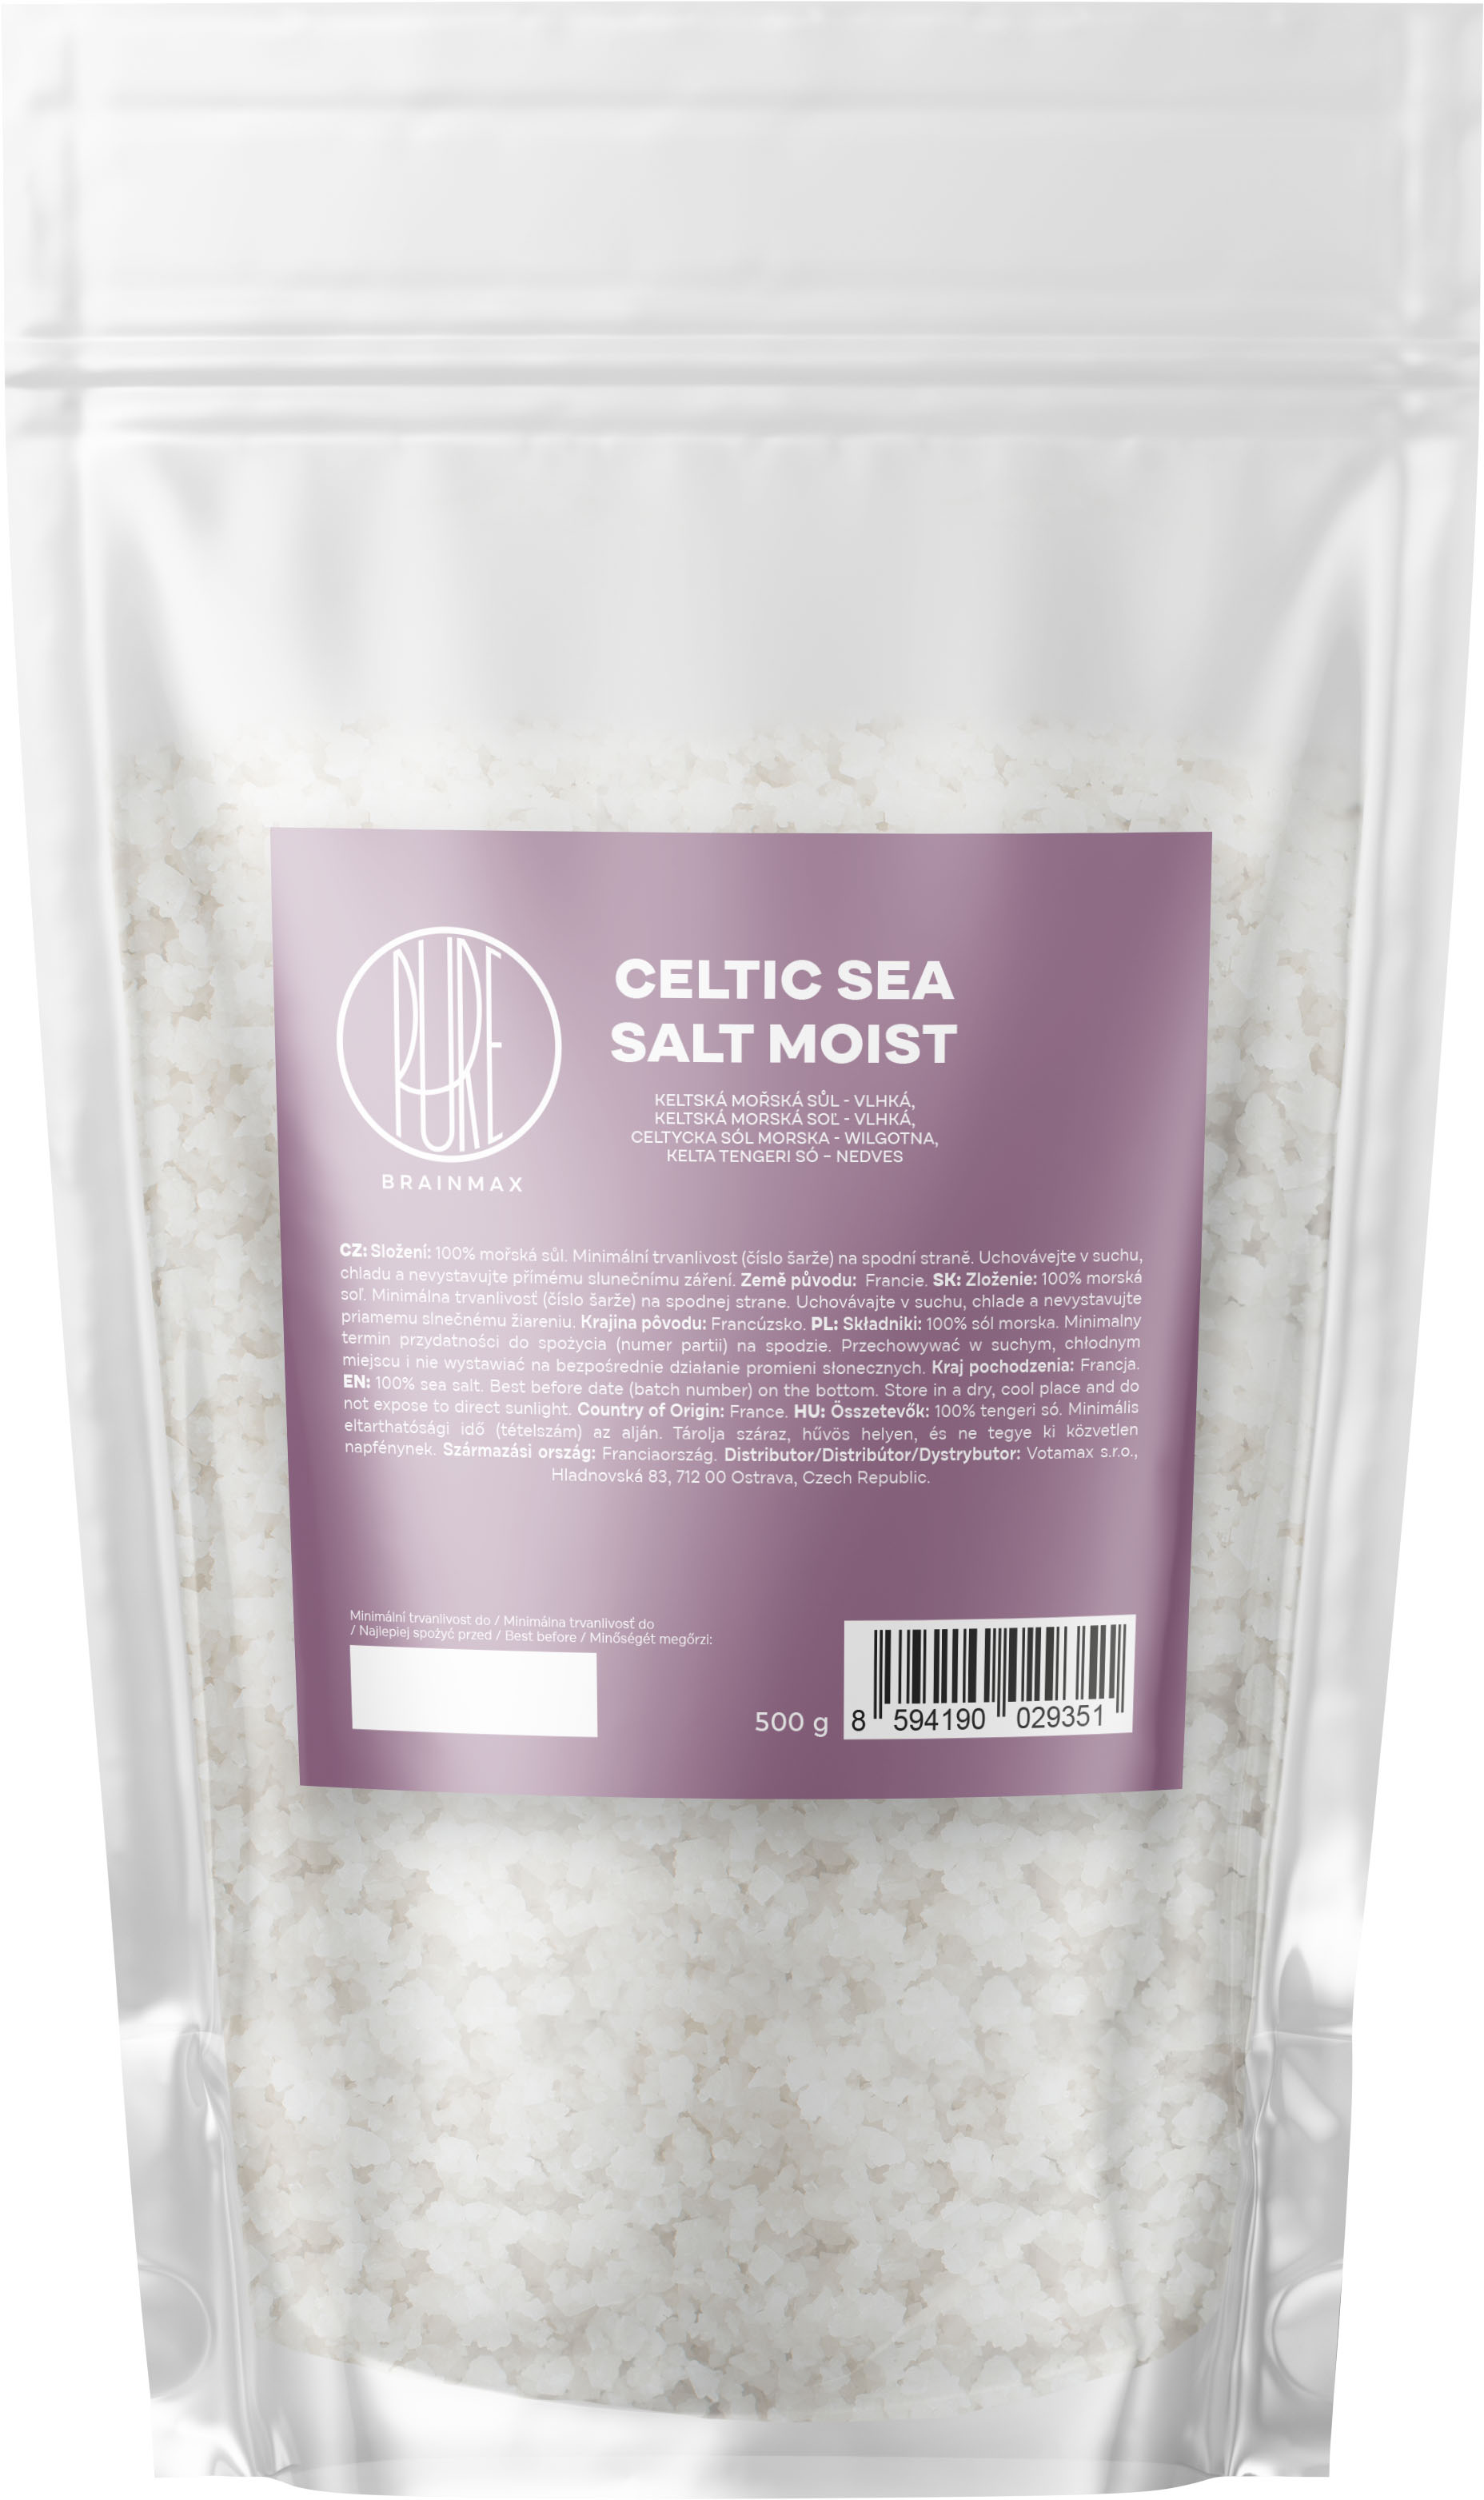 BrainMax Pure Cetlic Sea Salt, Moist, Keltská mořská sůl, vlhká, 500 g Keltská mořská sůl